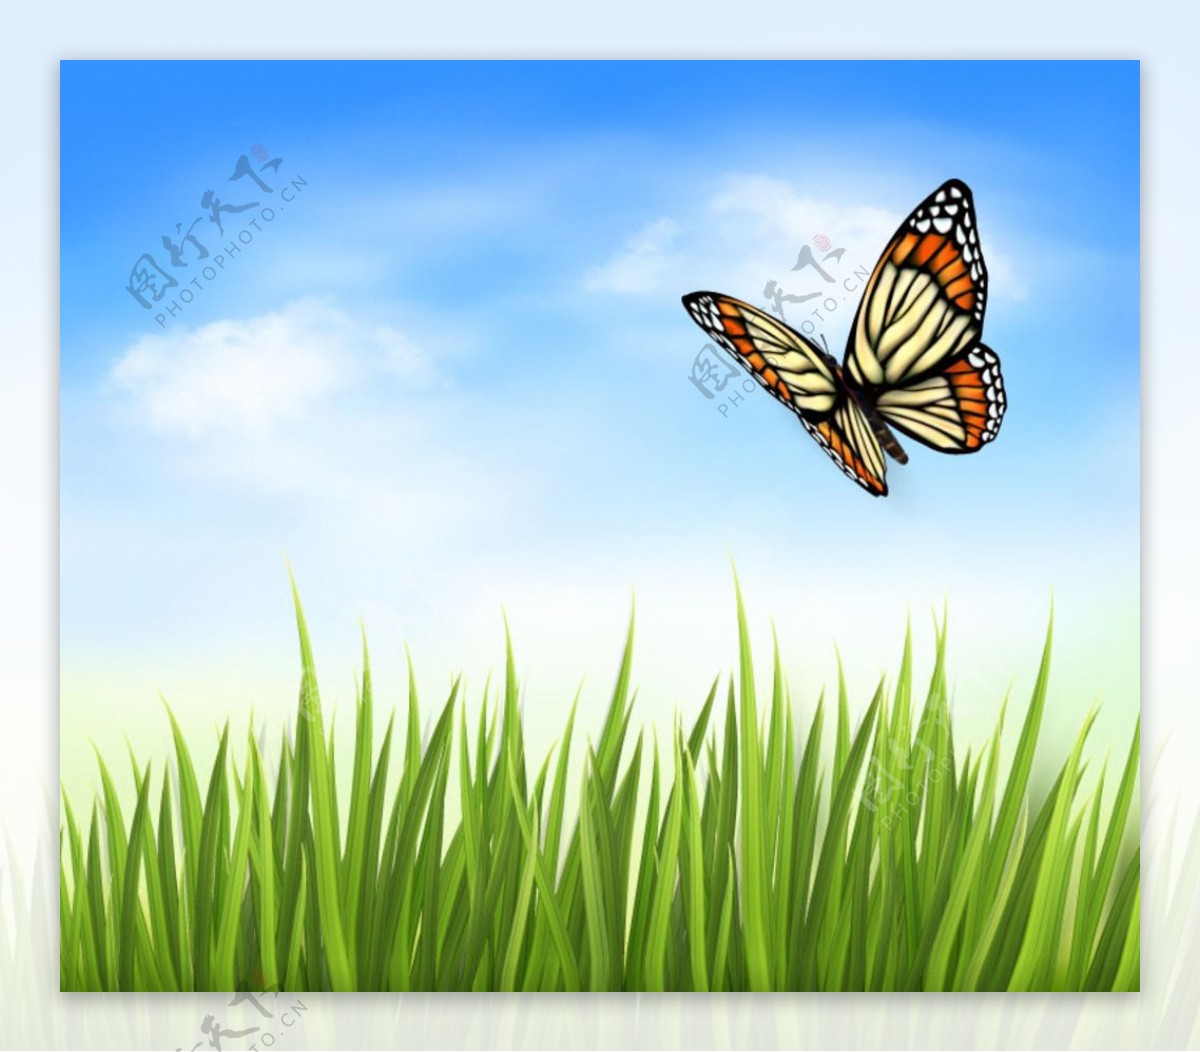 蝴蝶与草丛背景矢量素材